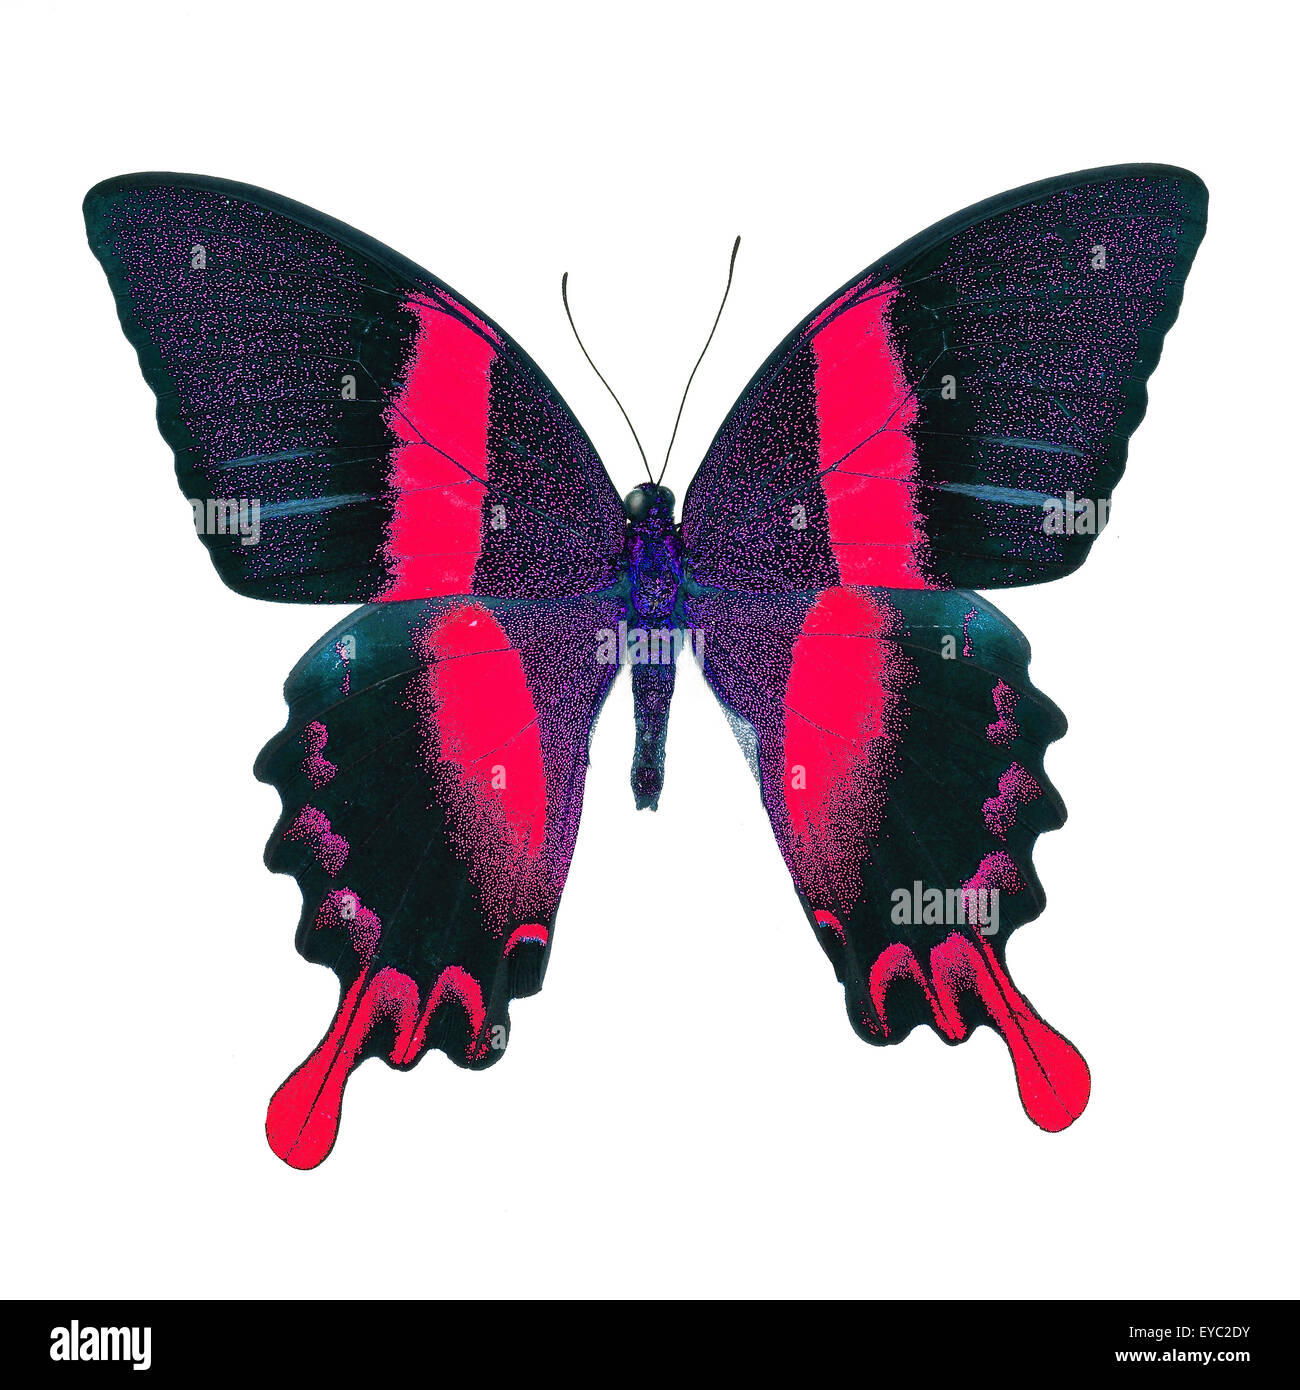 Beau papillon rouge, vert majestueux Papilio blumei) dans fantaisie profil de couleur, isolé sur fond blanc Banque D'Images